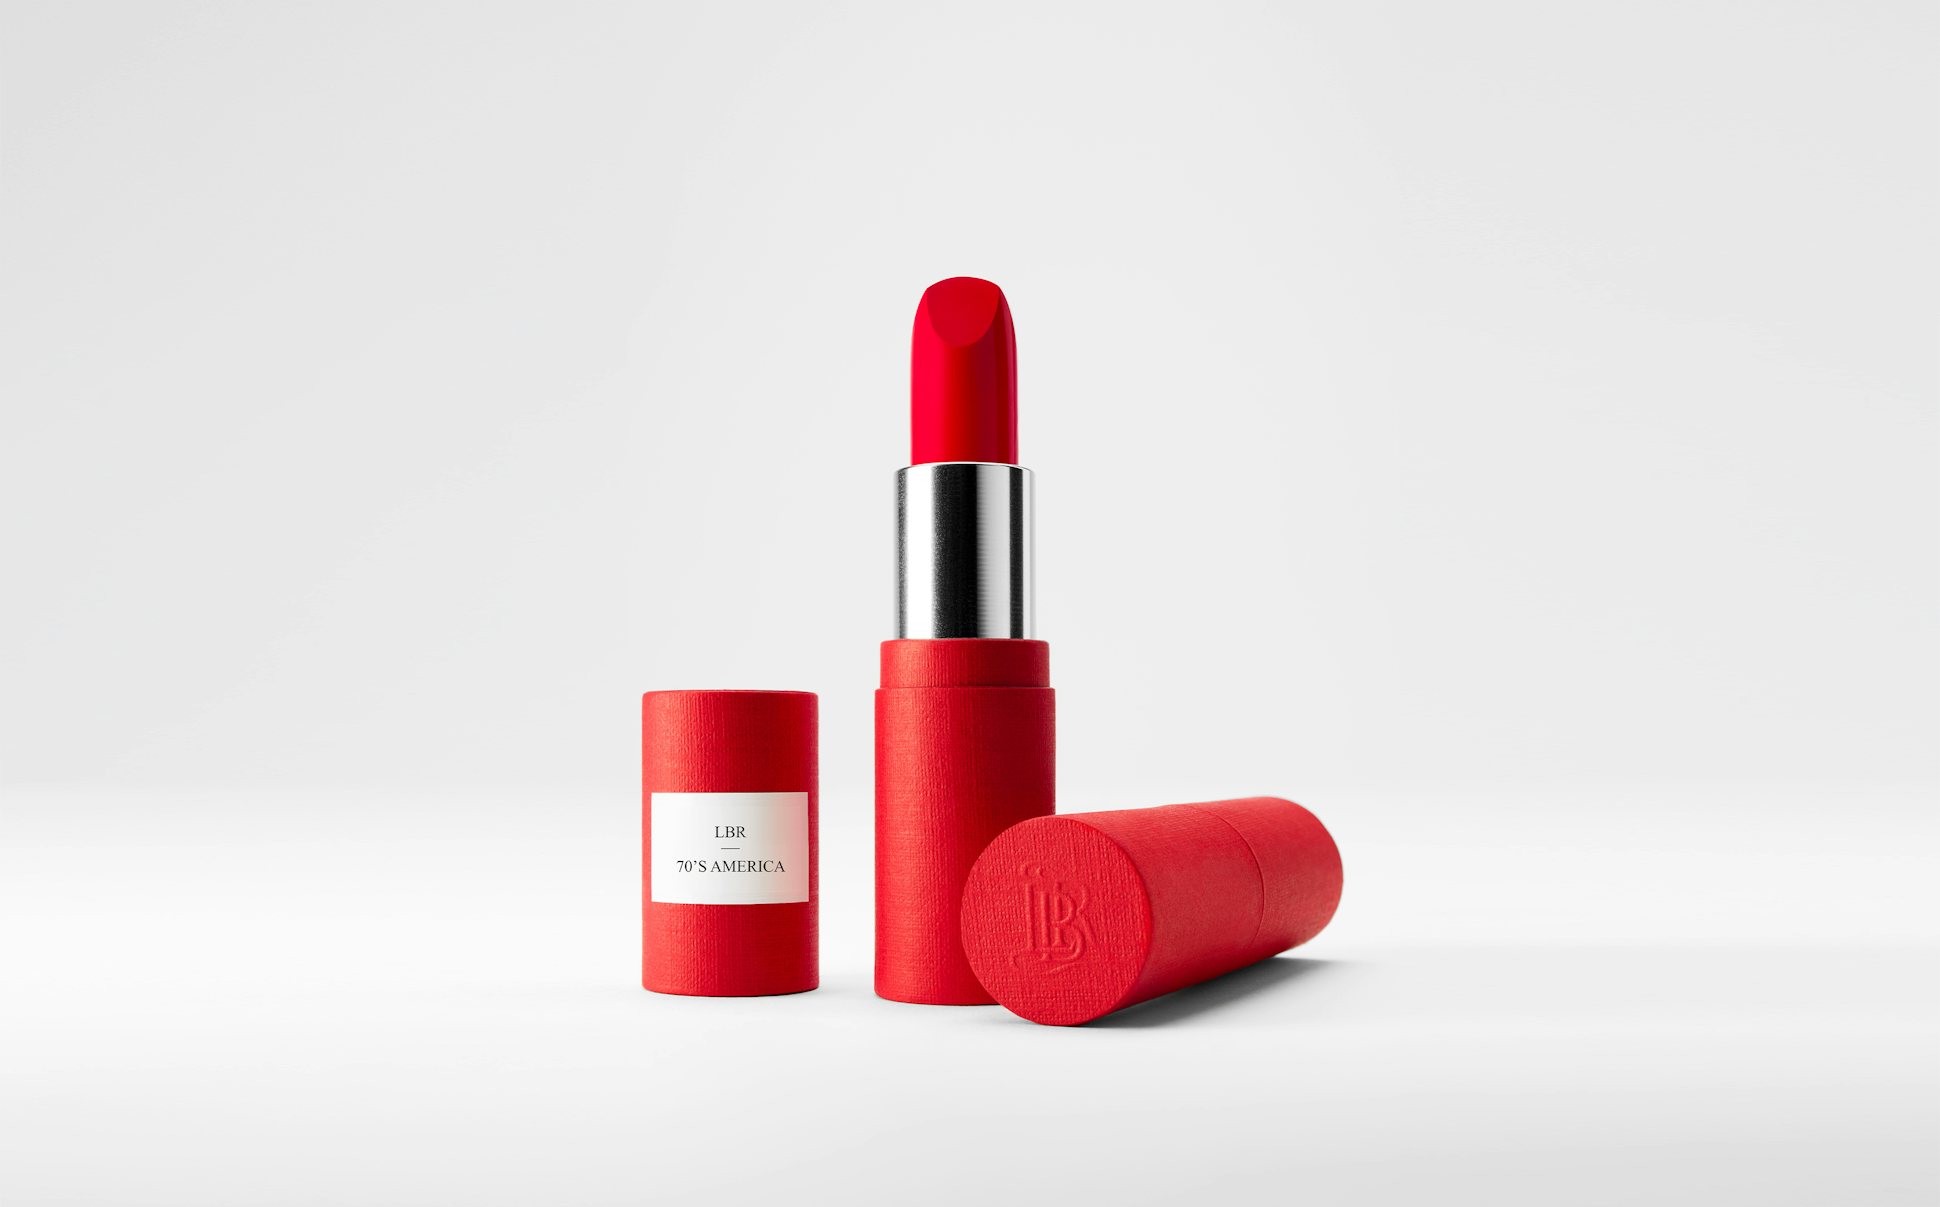 La bouche rouge 70s America lipstick in the red paper case